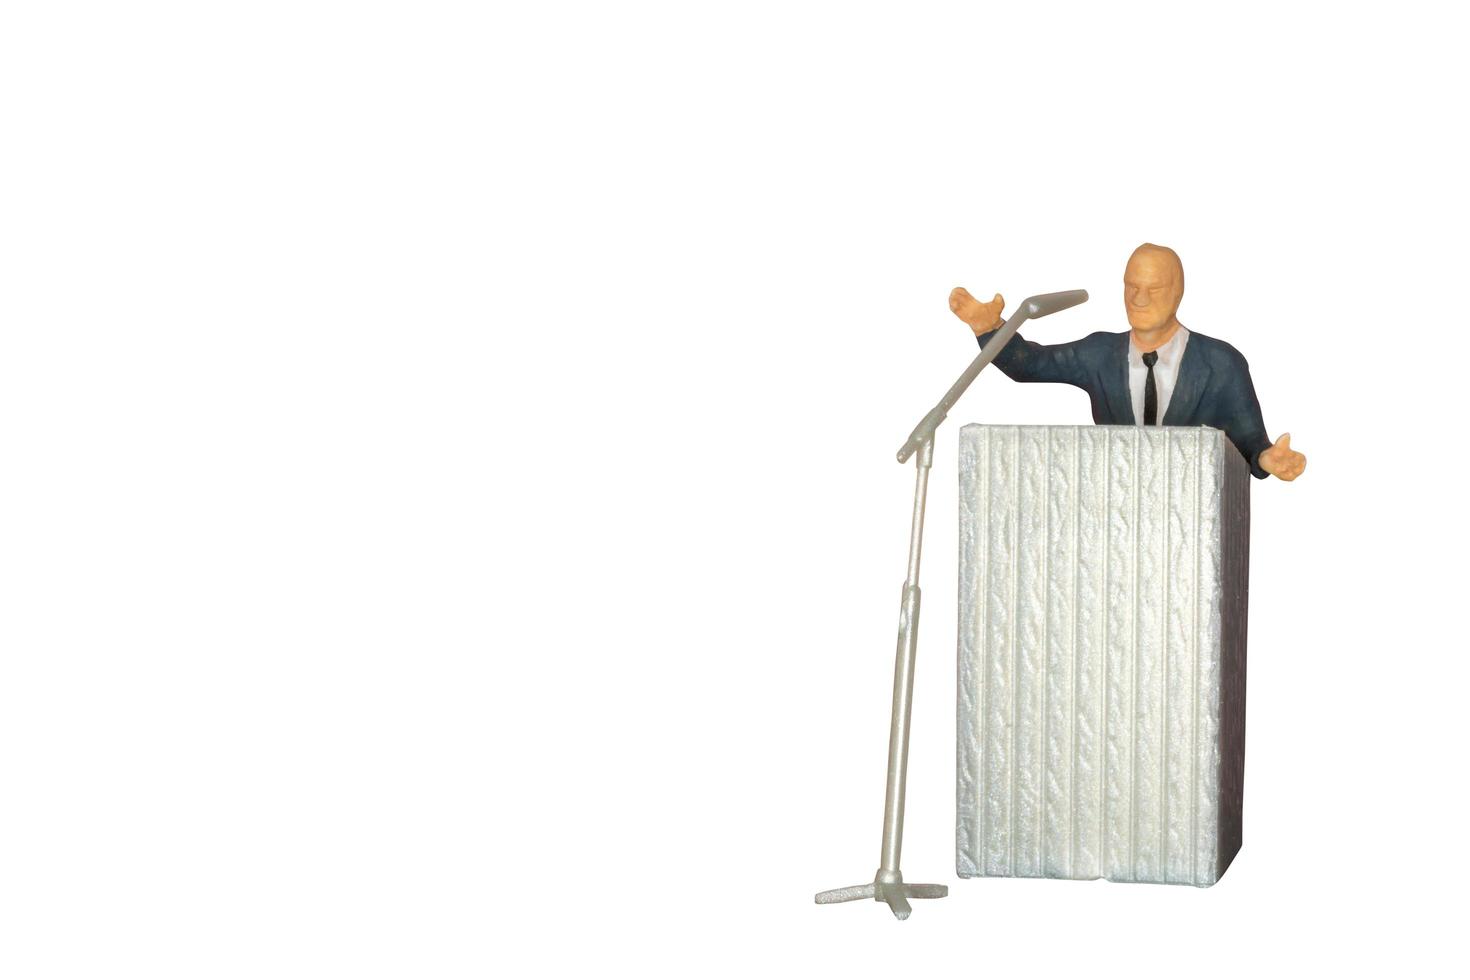 miniatuurpoliticus die met een microfoon spreekt die op een witte achtergrond wordt geïsoleerd foto